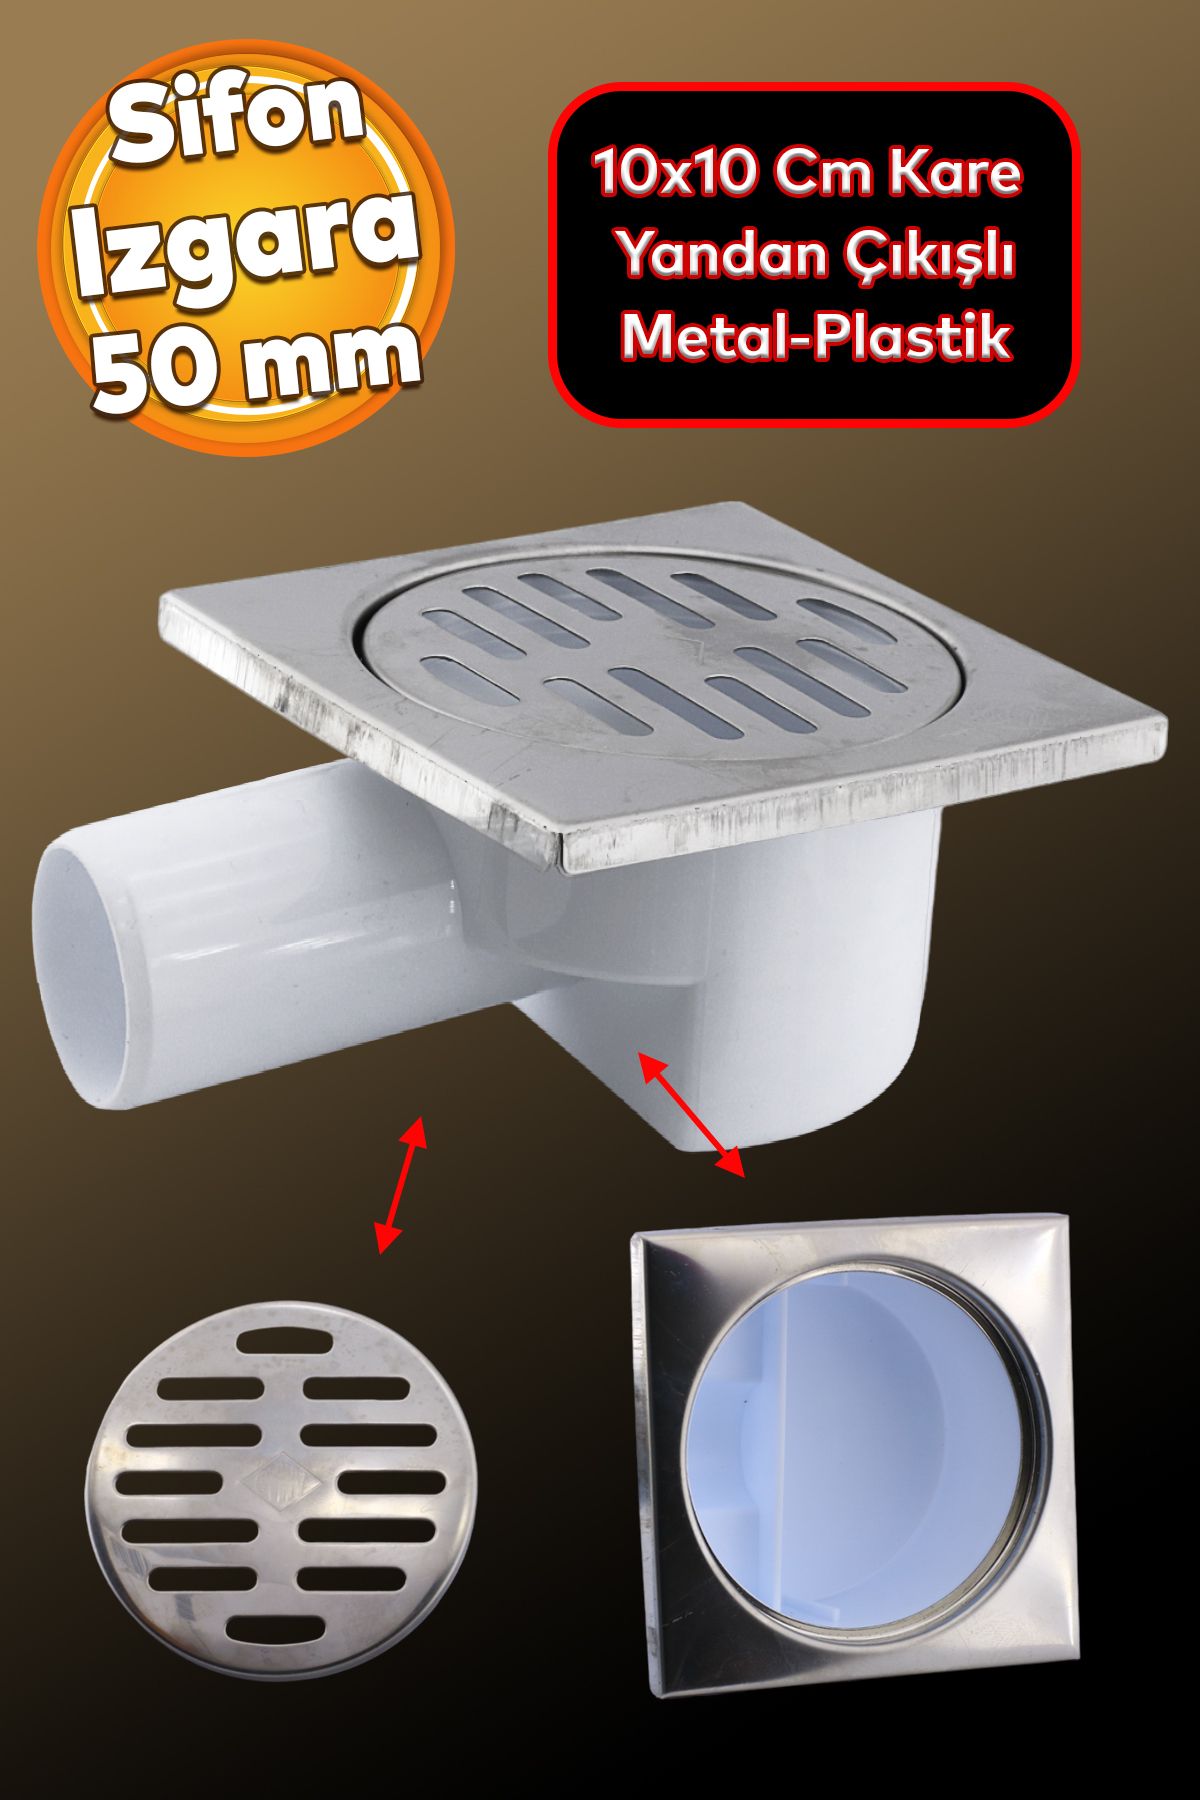 Badem10 Banyo Metal Plastik Yer Süzgeci Süzgeç Izgara Lavabo Pis Su Gideri Kapak Yandan Çıkışlı Sifon 50 Mm